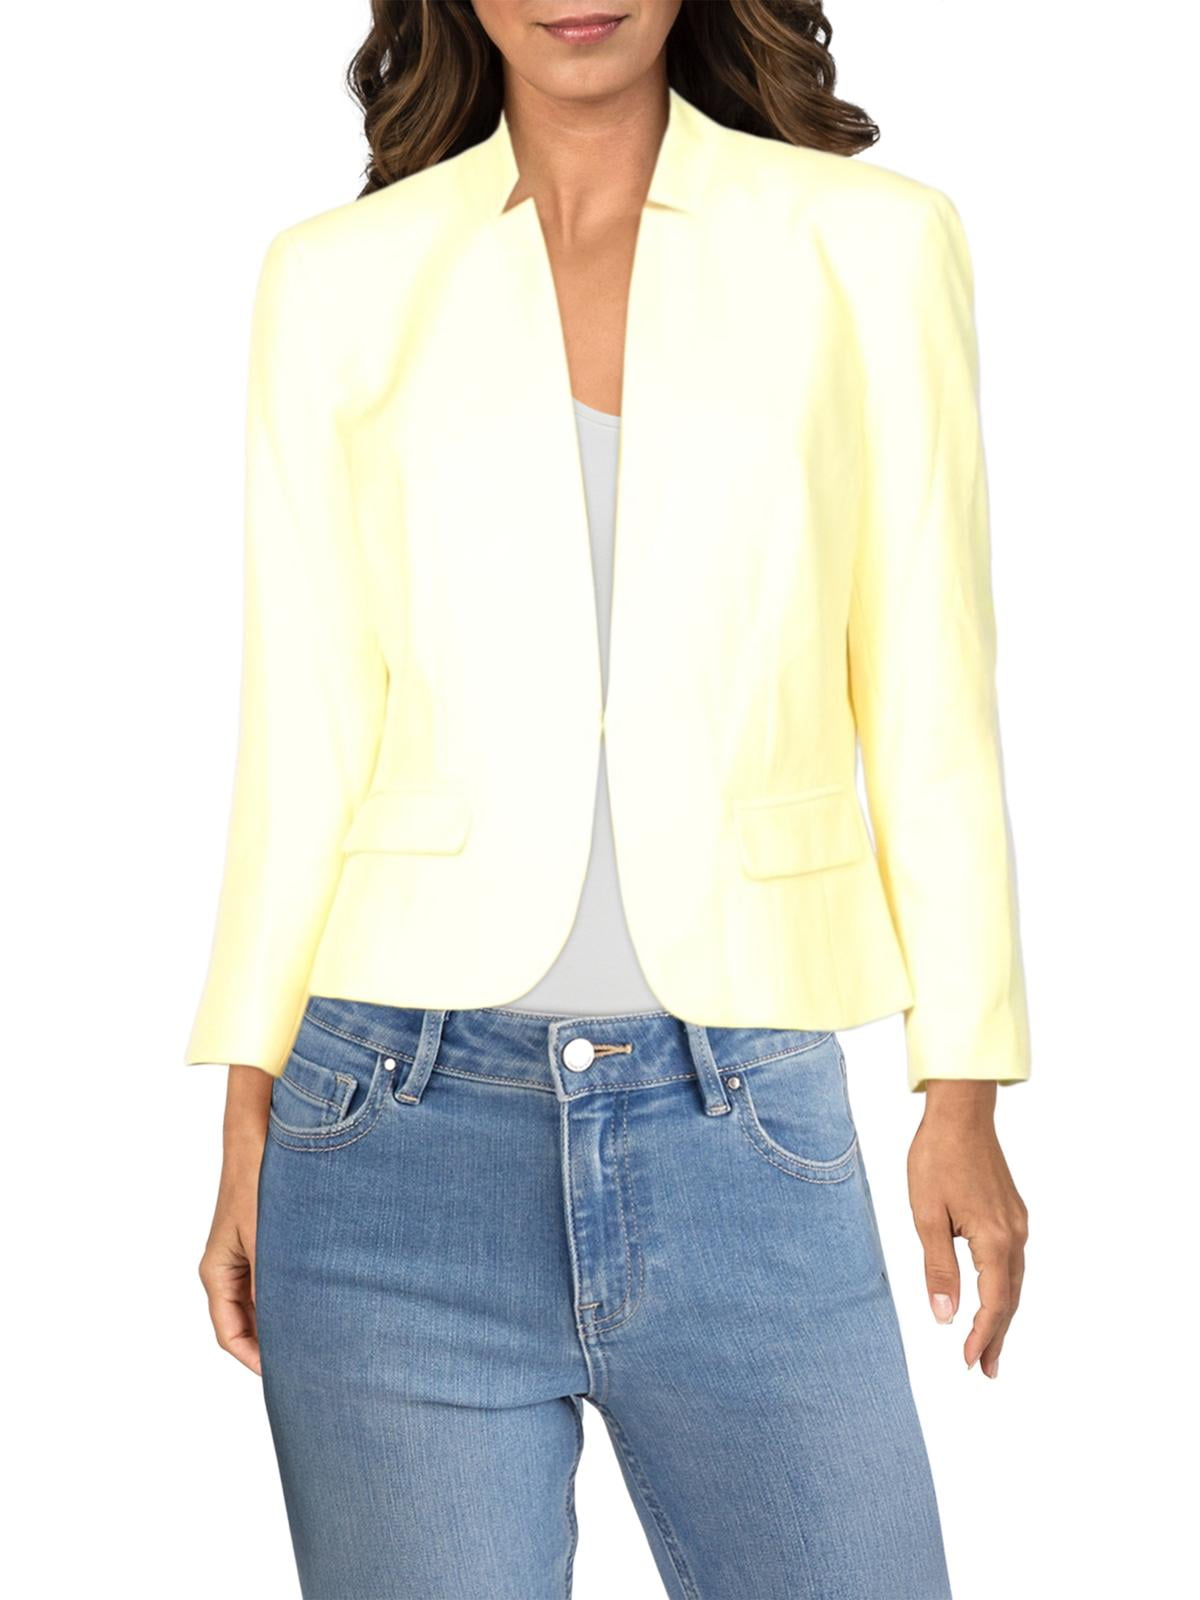 Kasper - Kasper Womens Cutout Collar Crepe Jacket Yellow L - Walmart ...